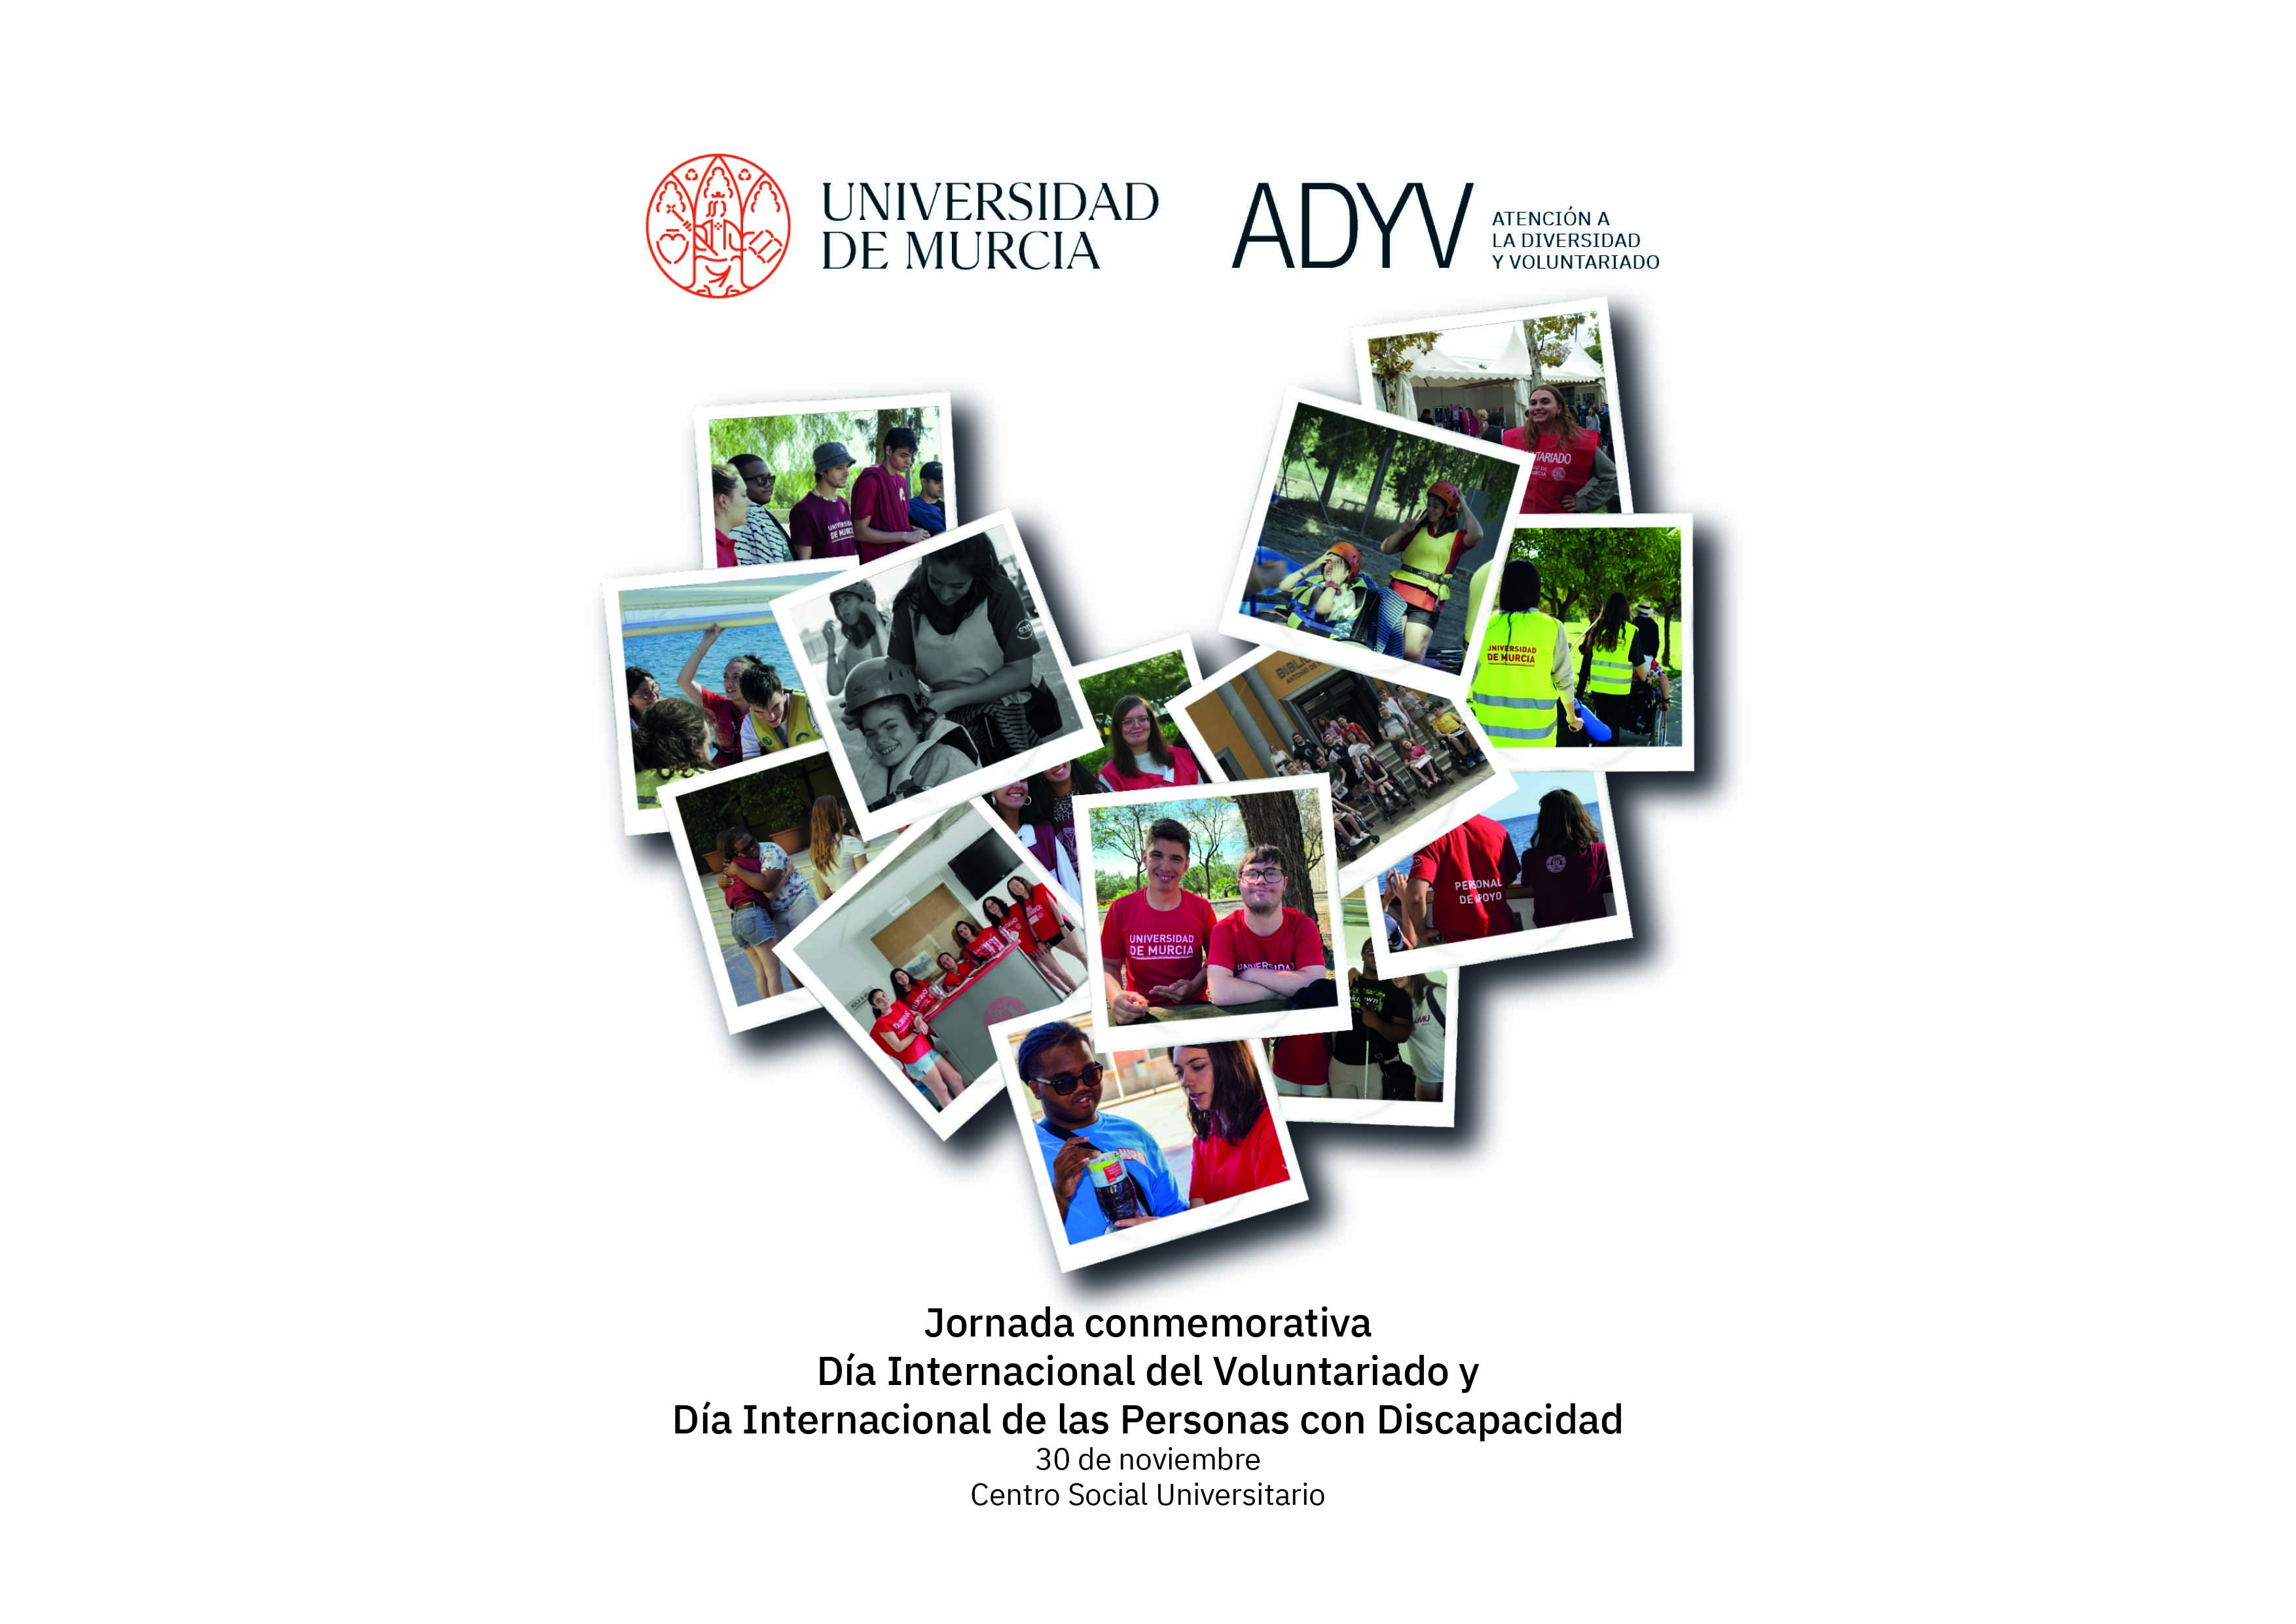 ADyV prepara una Jornada conmemorativa del Día Internacional del Voluntariado y Día Internacional de las Personas con Discapacidad para el 30 de noviembre en el Centro Social Universitario